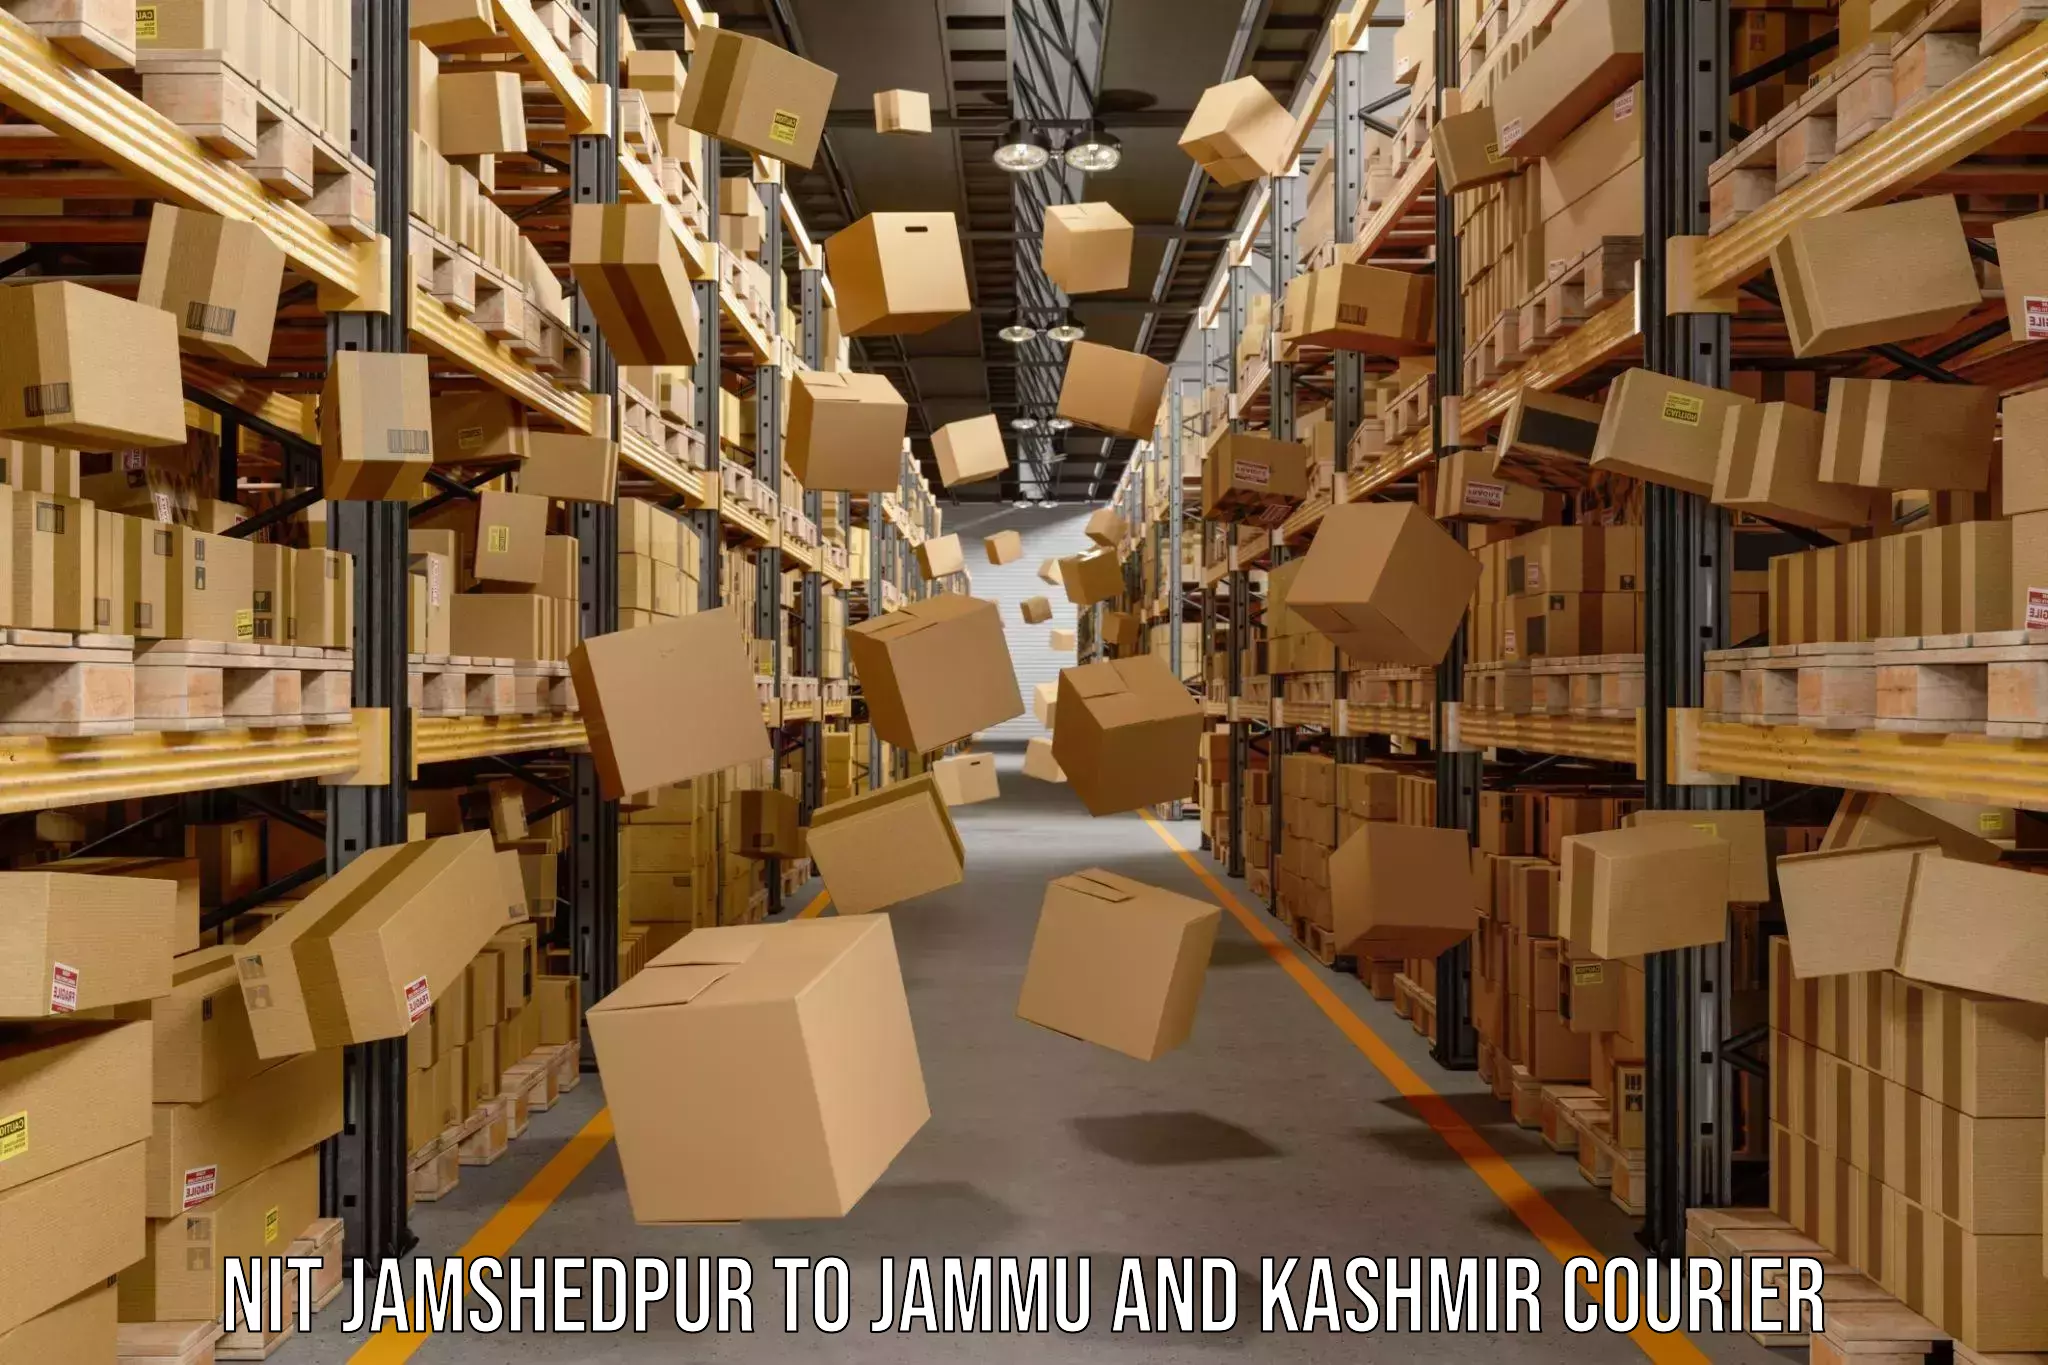 International courier networks NIT Jamshedpur to Srinagar Kashmir